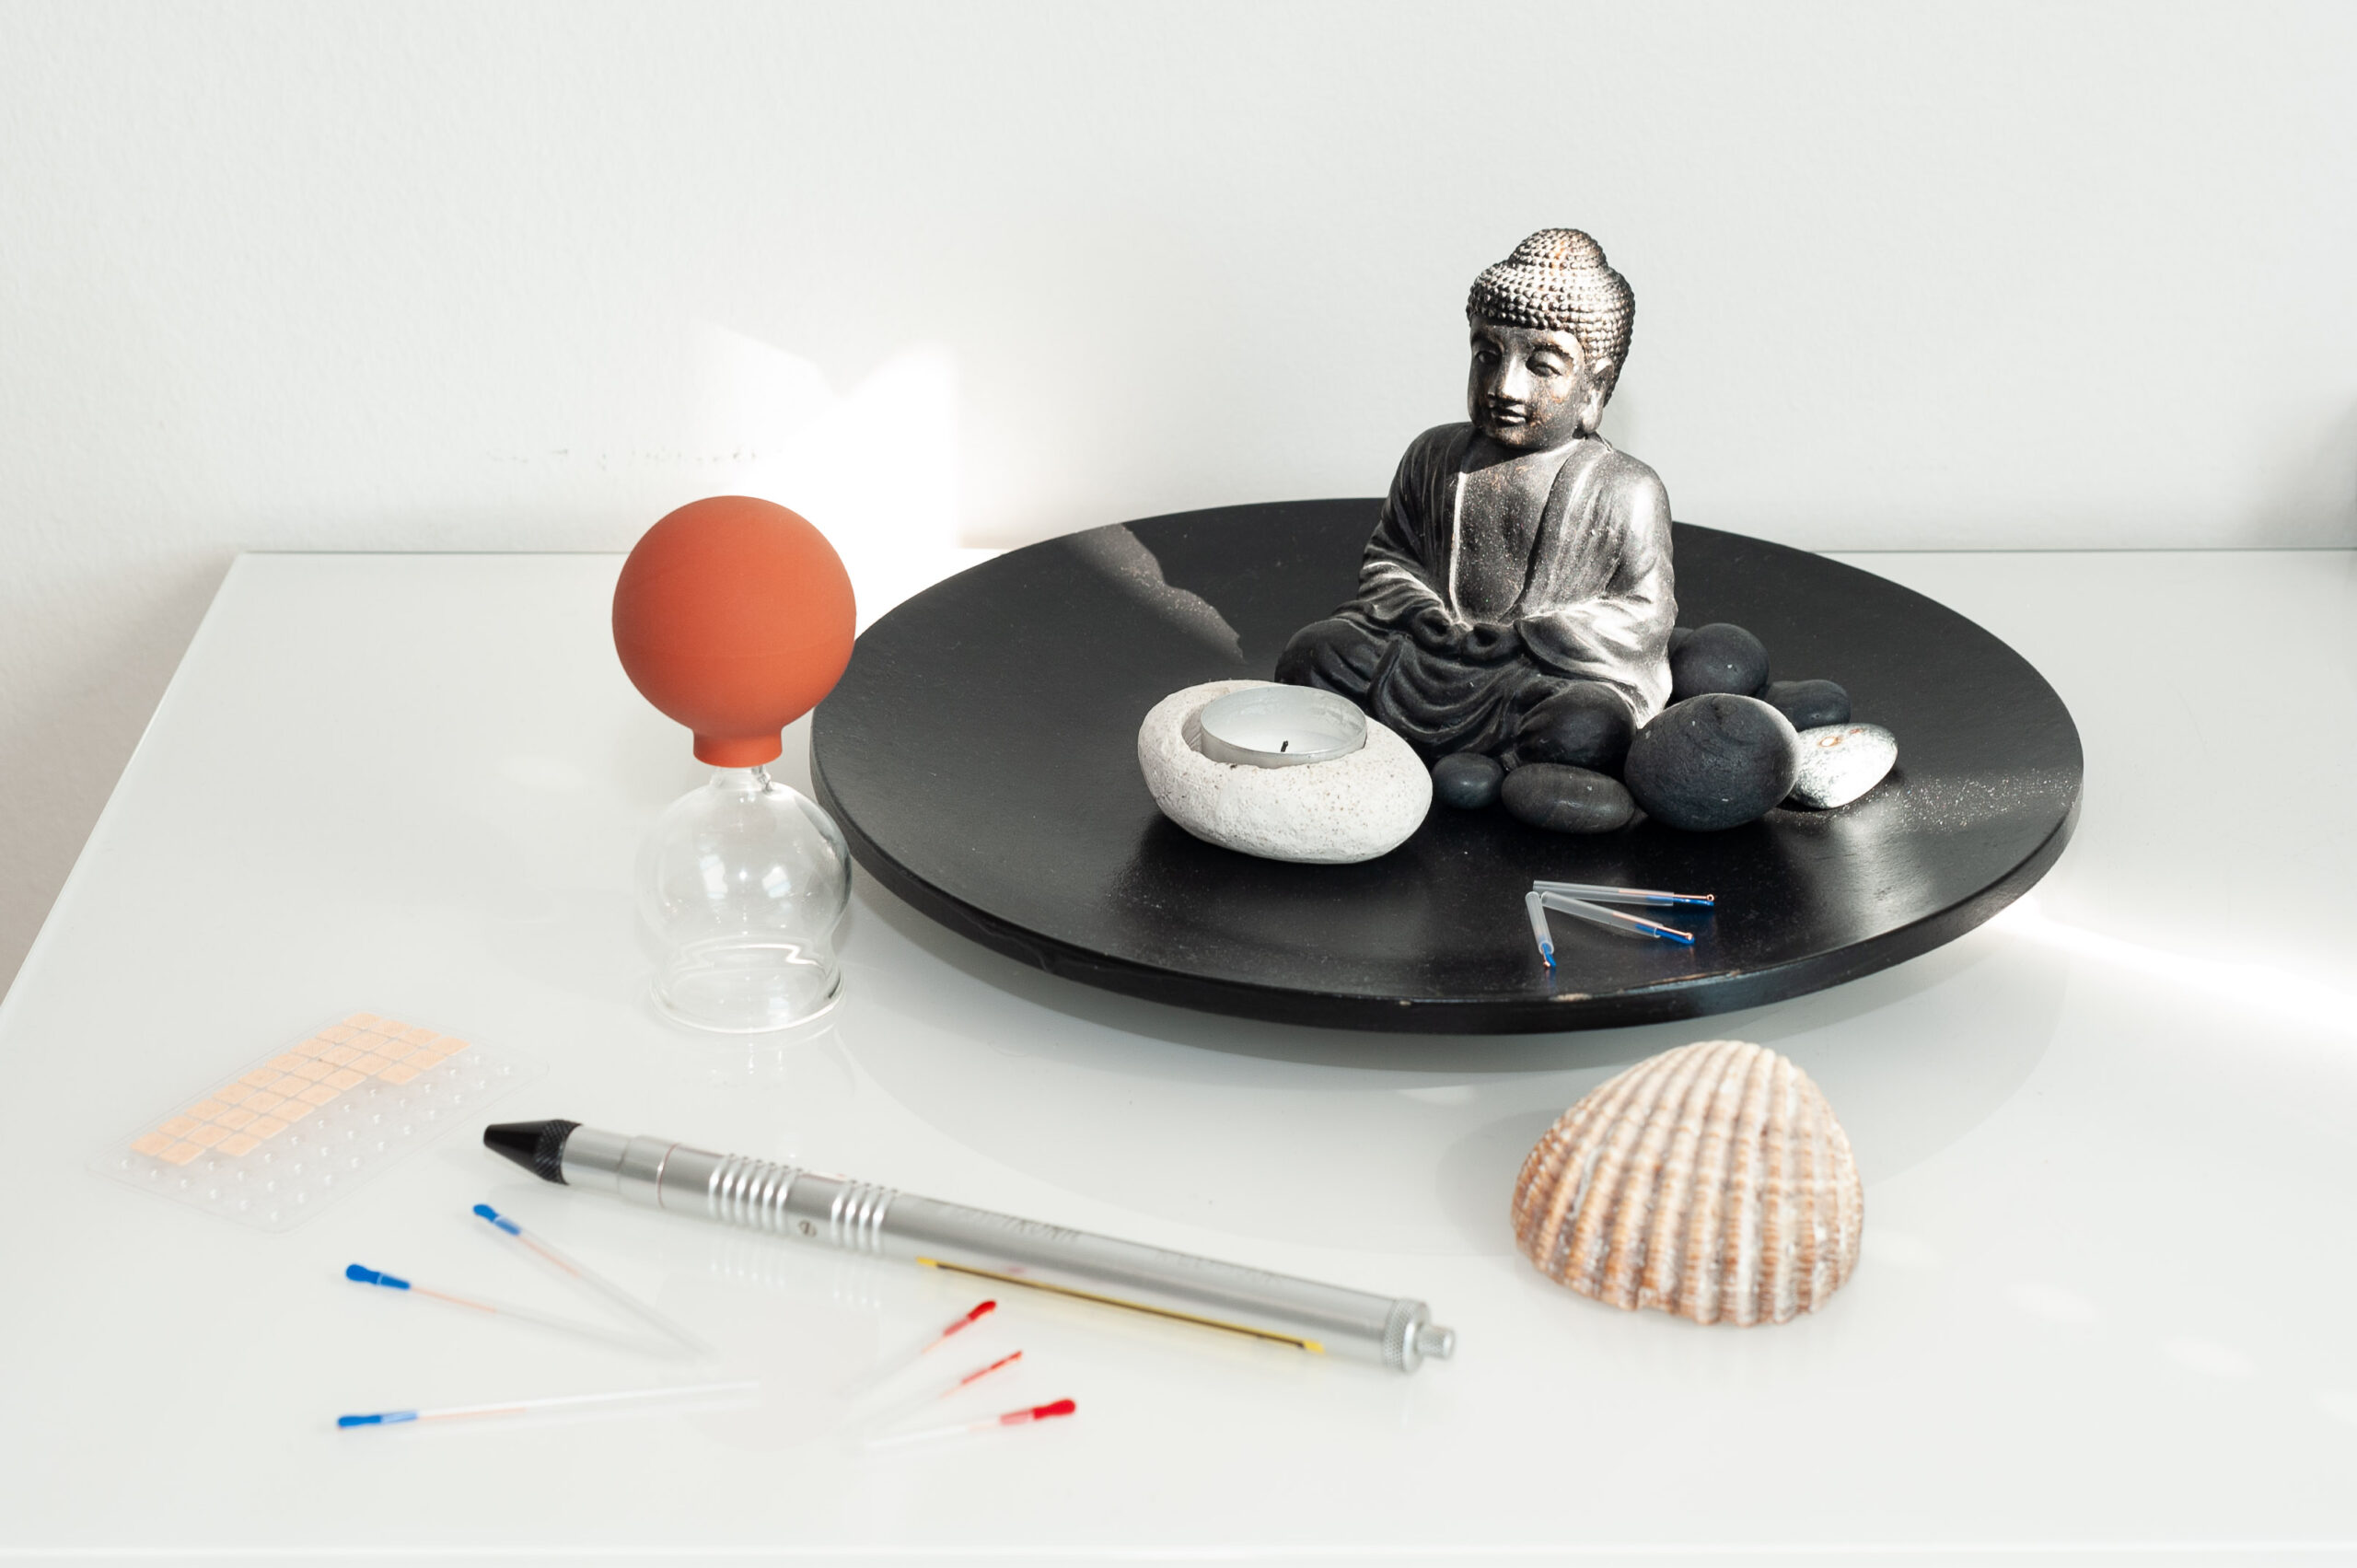 Eine kleine Buddastatue auf einem Teller, ein Schröpfglas, eine Muschel, eine Kerze, Akupunkturnadeln und vieles weiteres arrangiert in der Praxis von Dr. Helga Barilich.